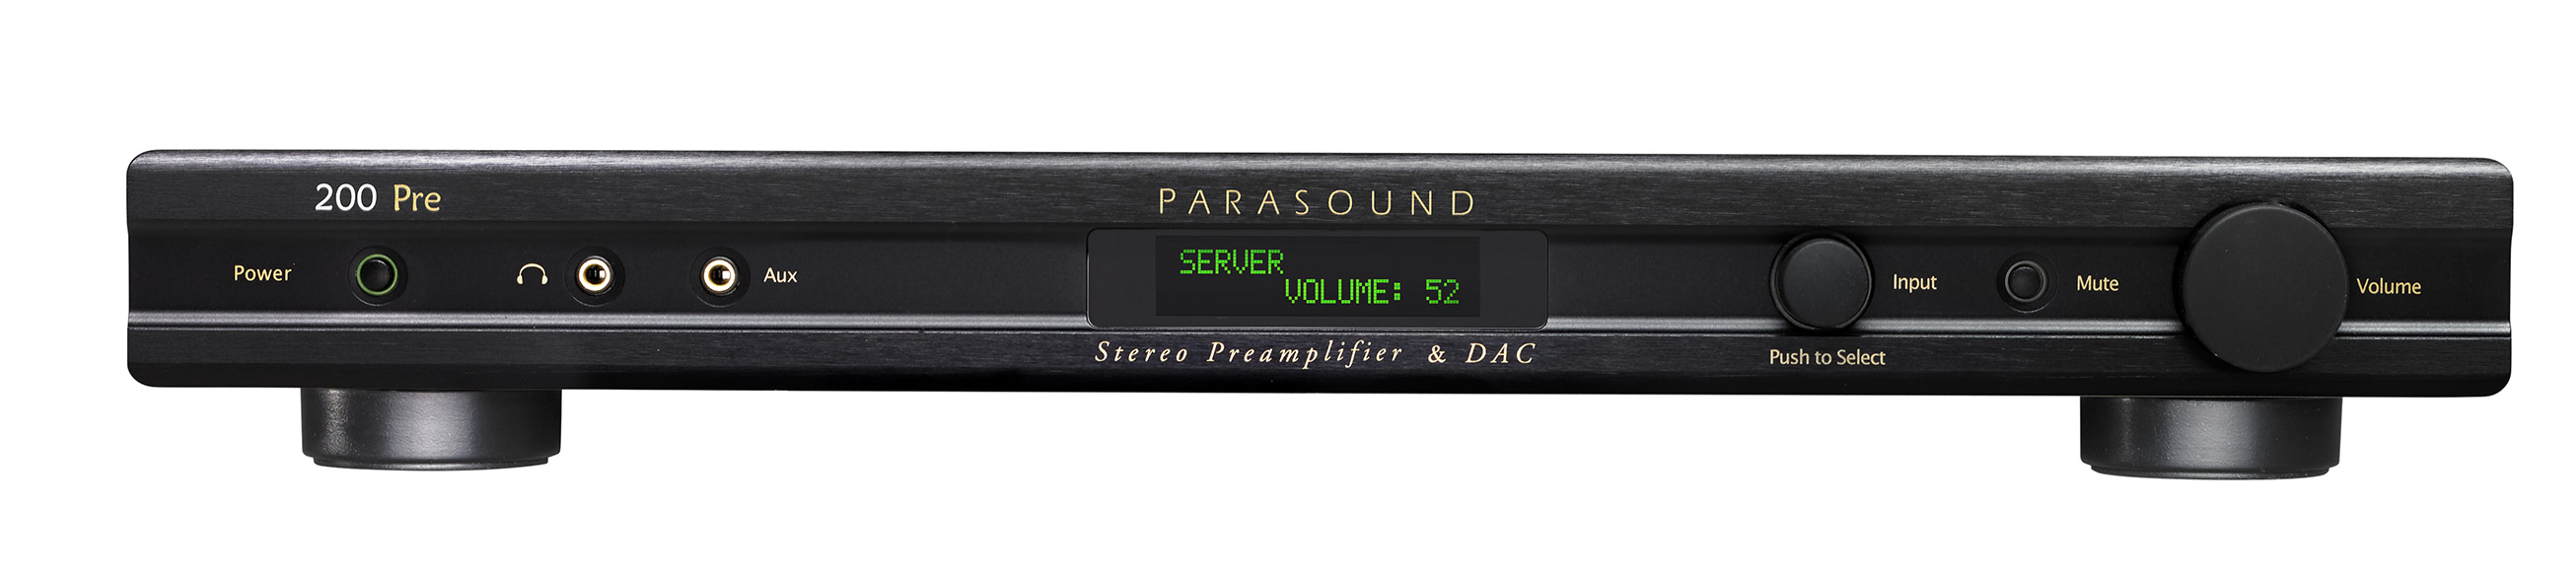 Parasound NewClassic 200 Pre